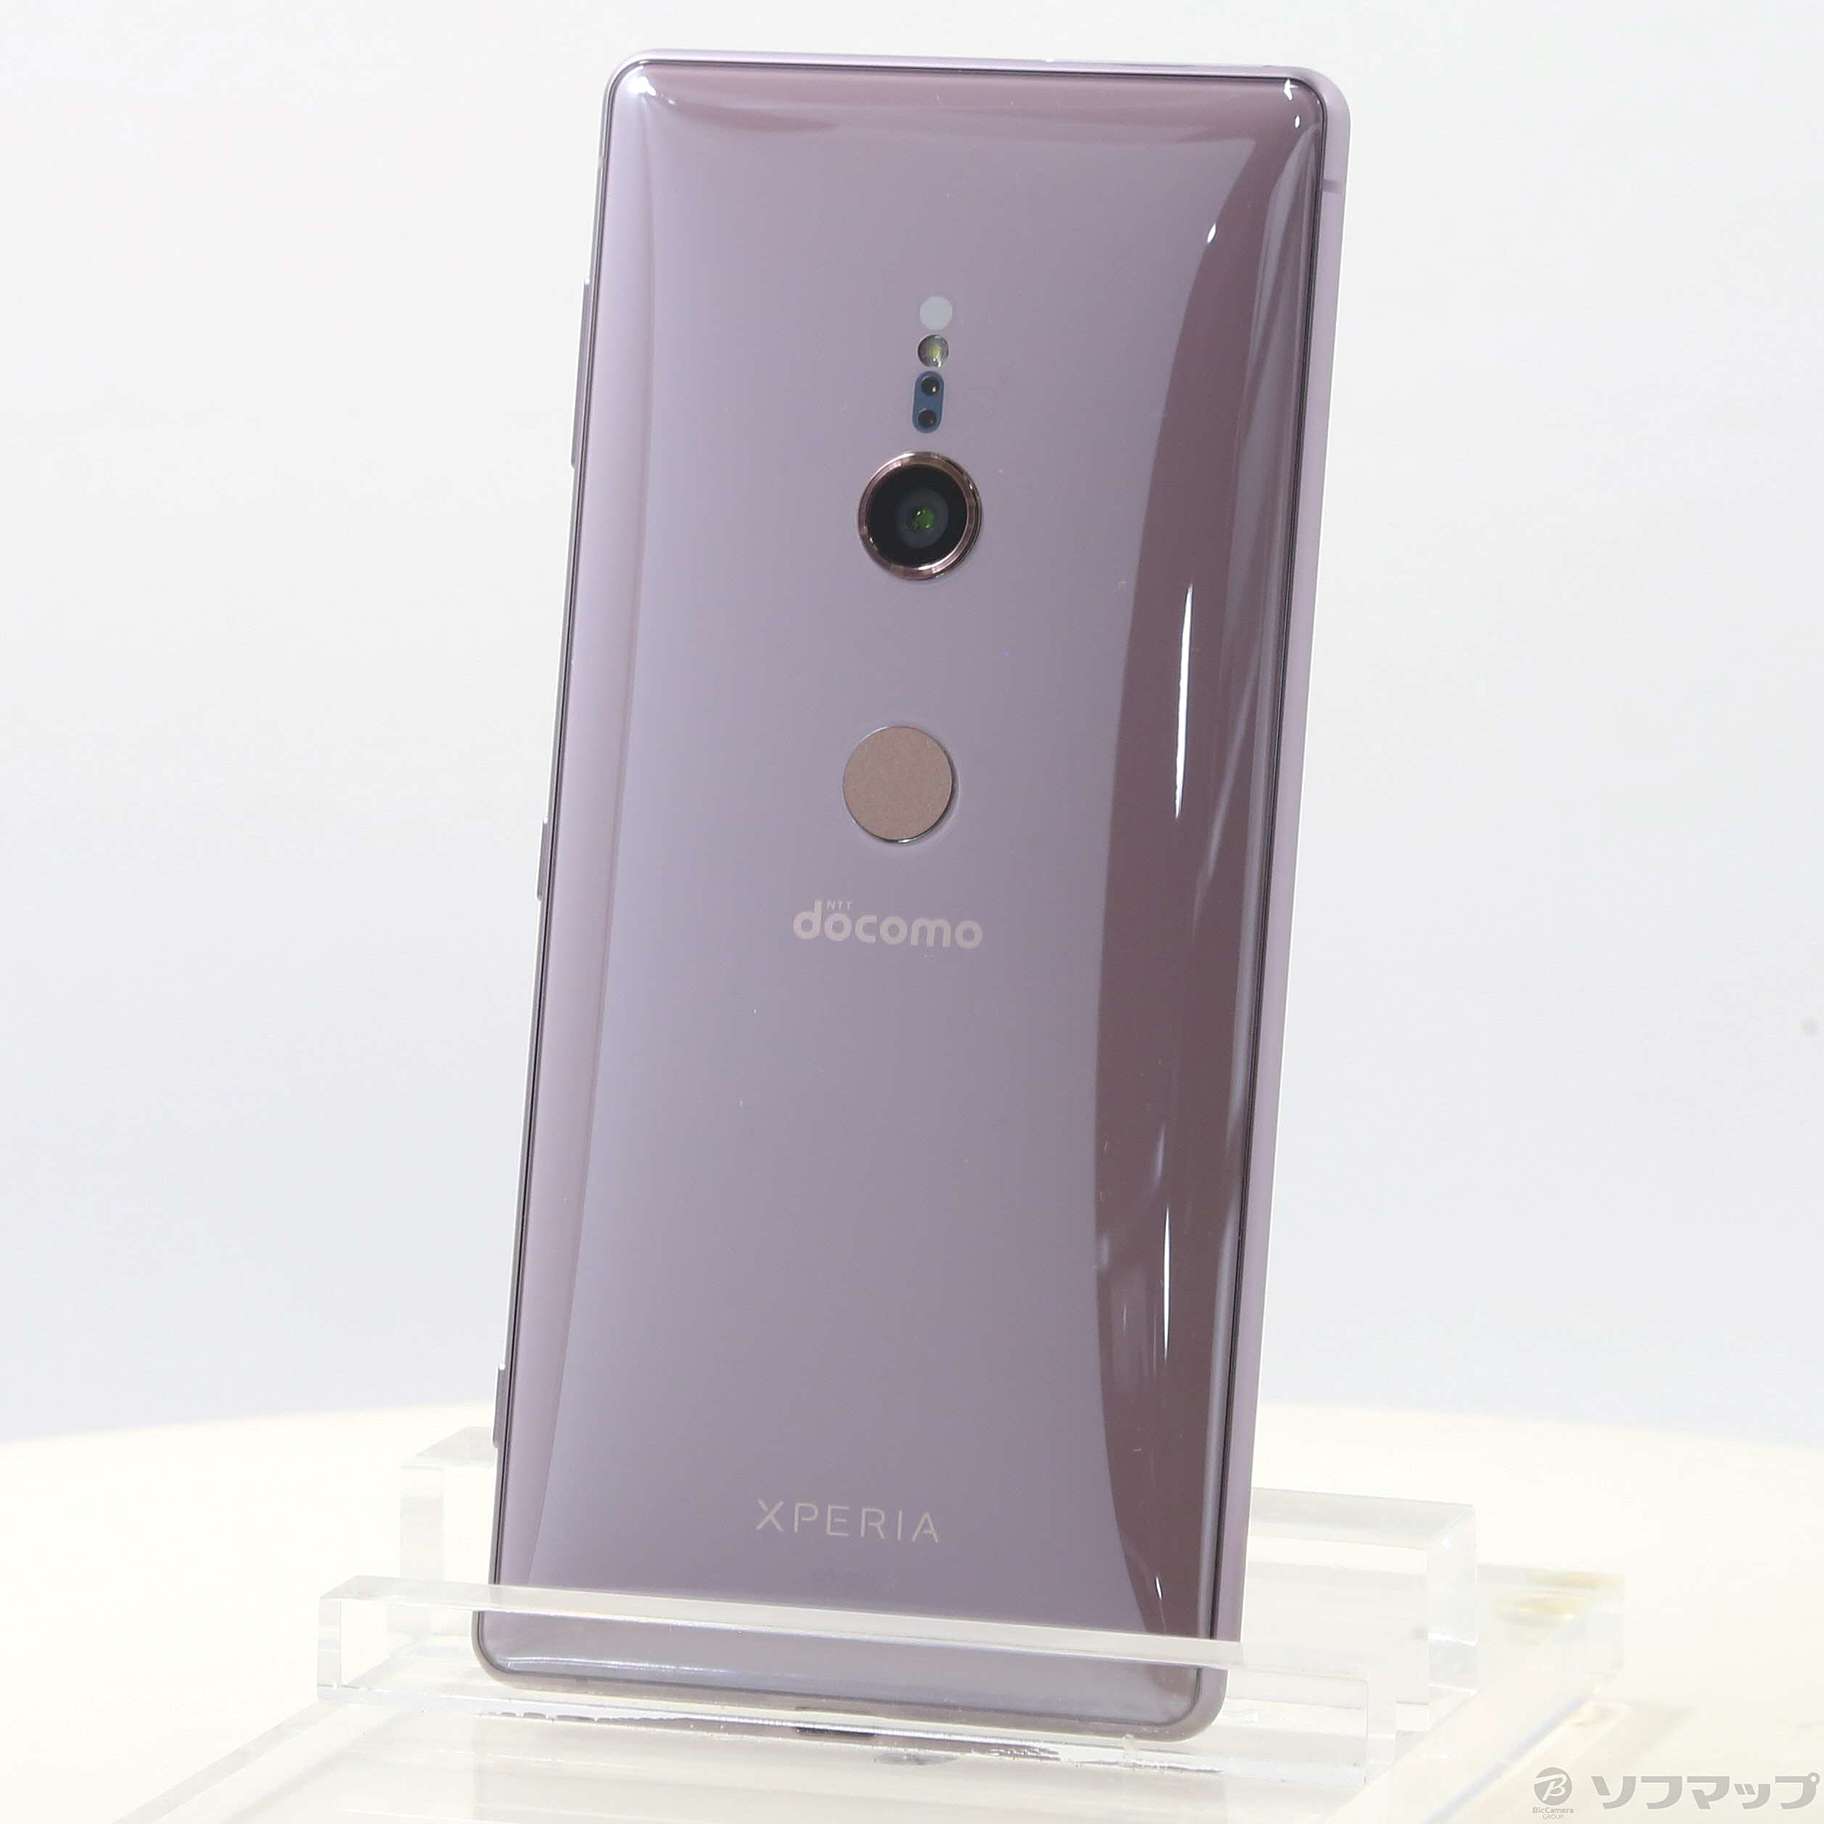 xperia xz2 ash pink 64gb docomoスマートフォン/携帯電話